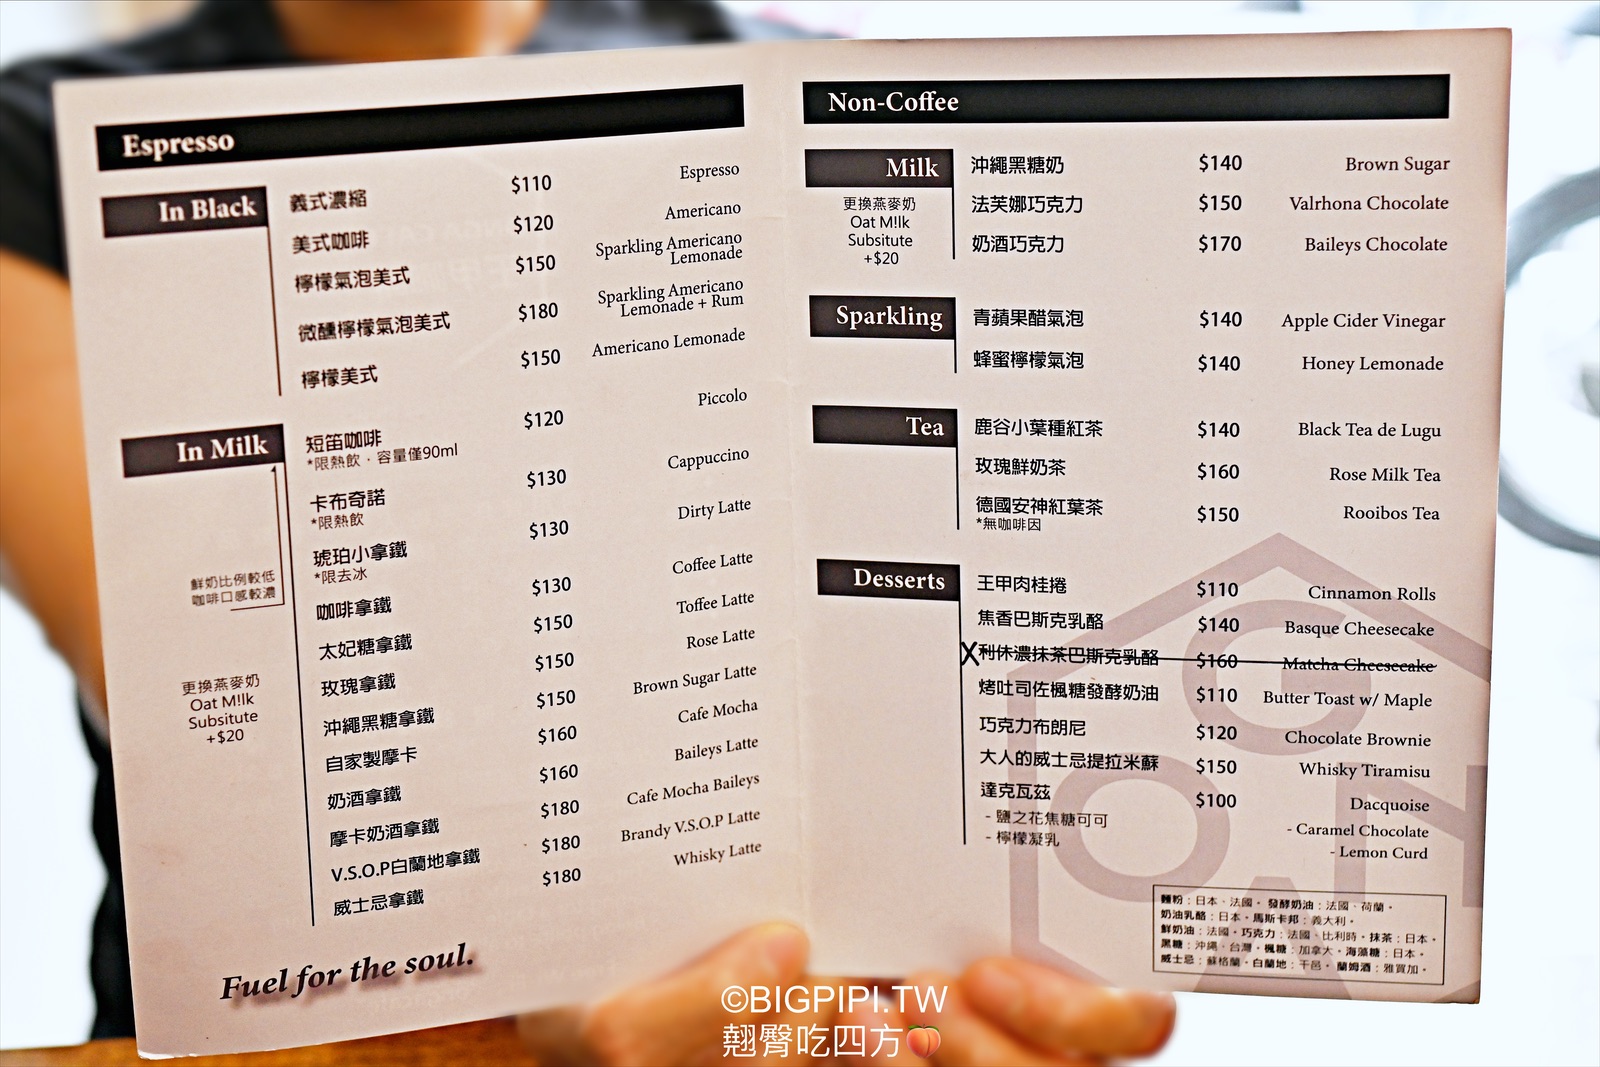 【沙鹿美食】王甲咖啡 ONGA CAFE ，台中海線最美咖啡店肉桂捲好好吃白蘭地拿鐵我好愛（菜單） @翹臀吃四方